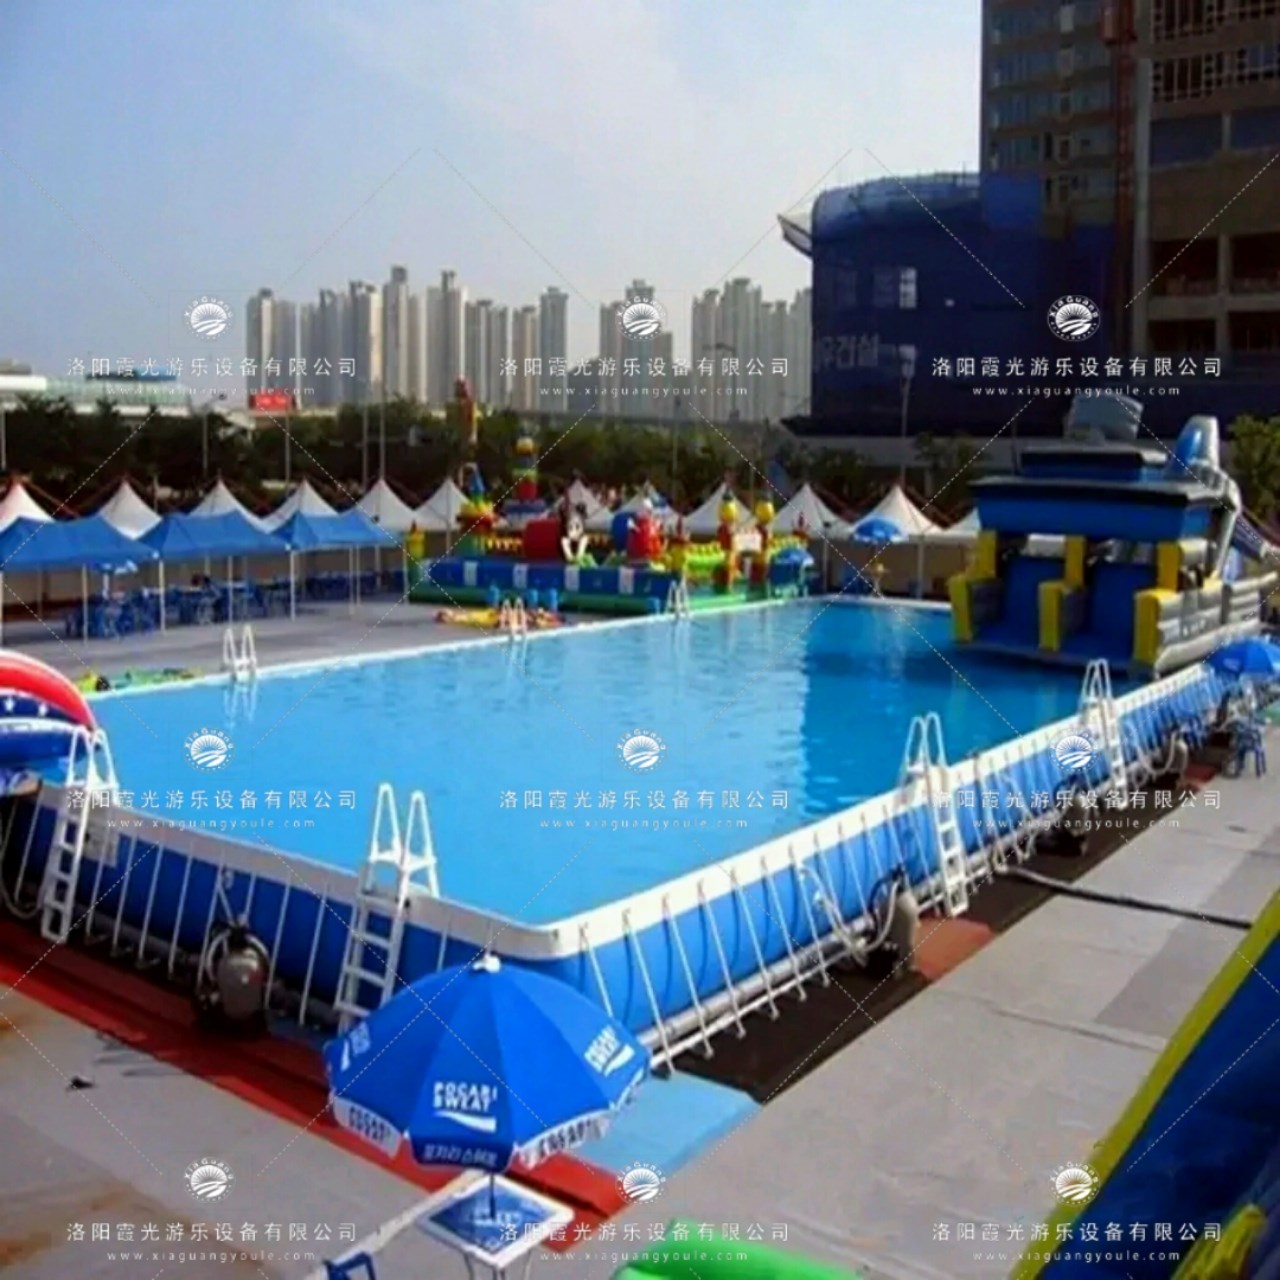 冯坡镇支架泳池